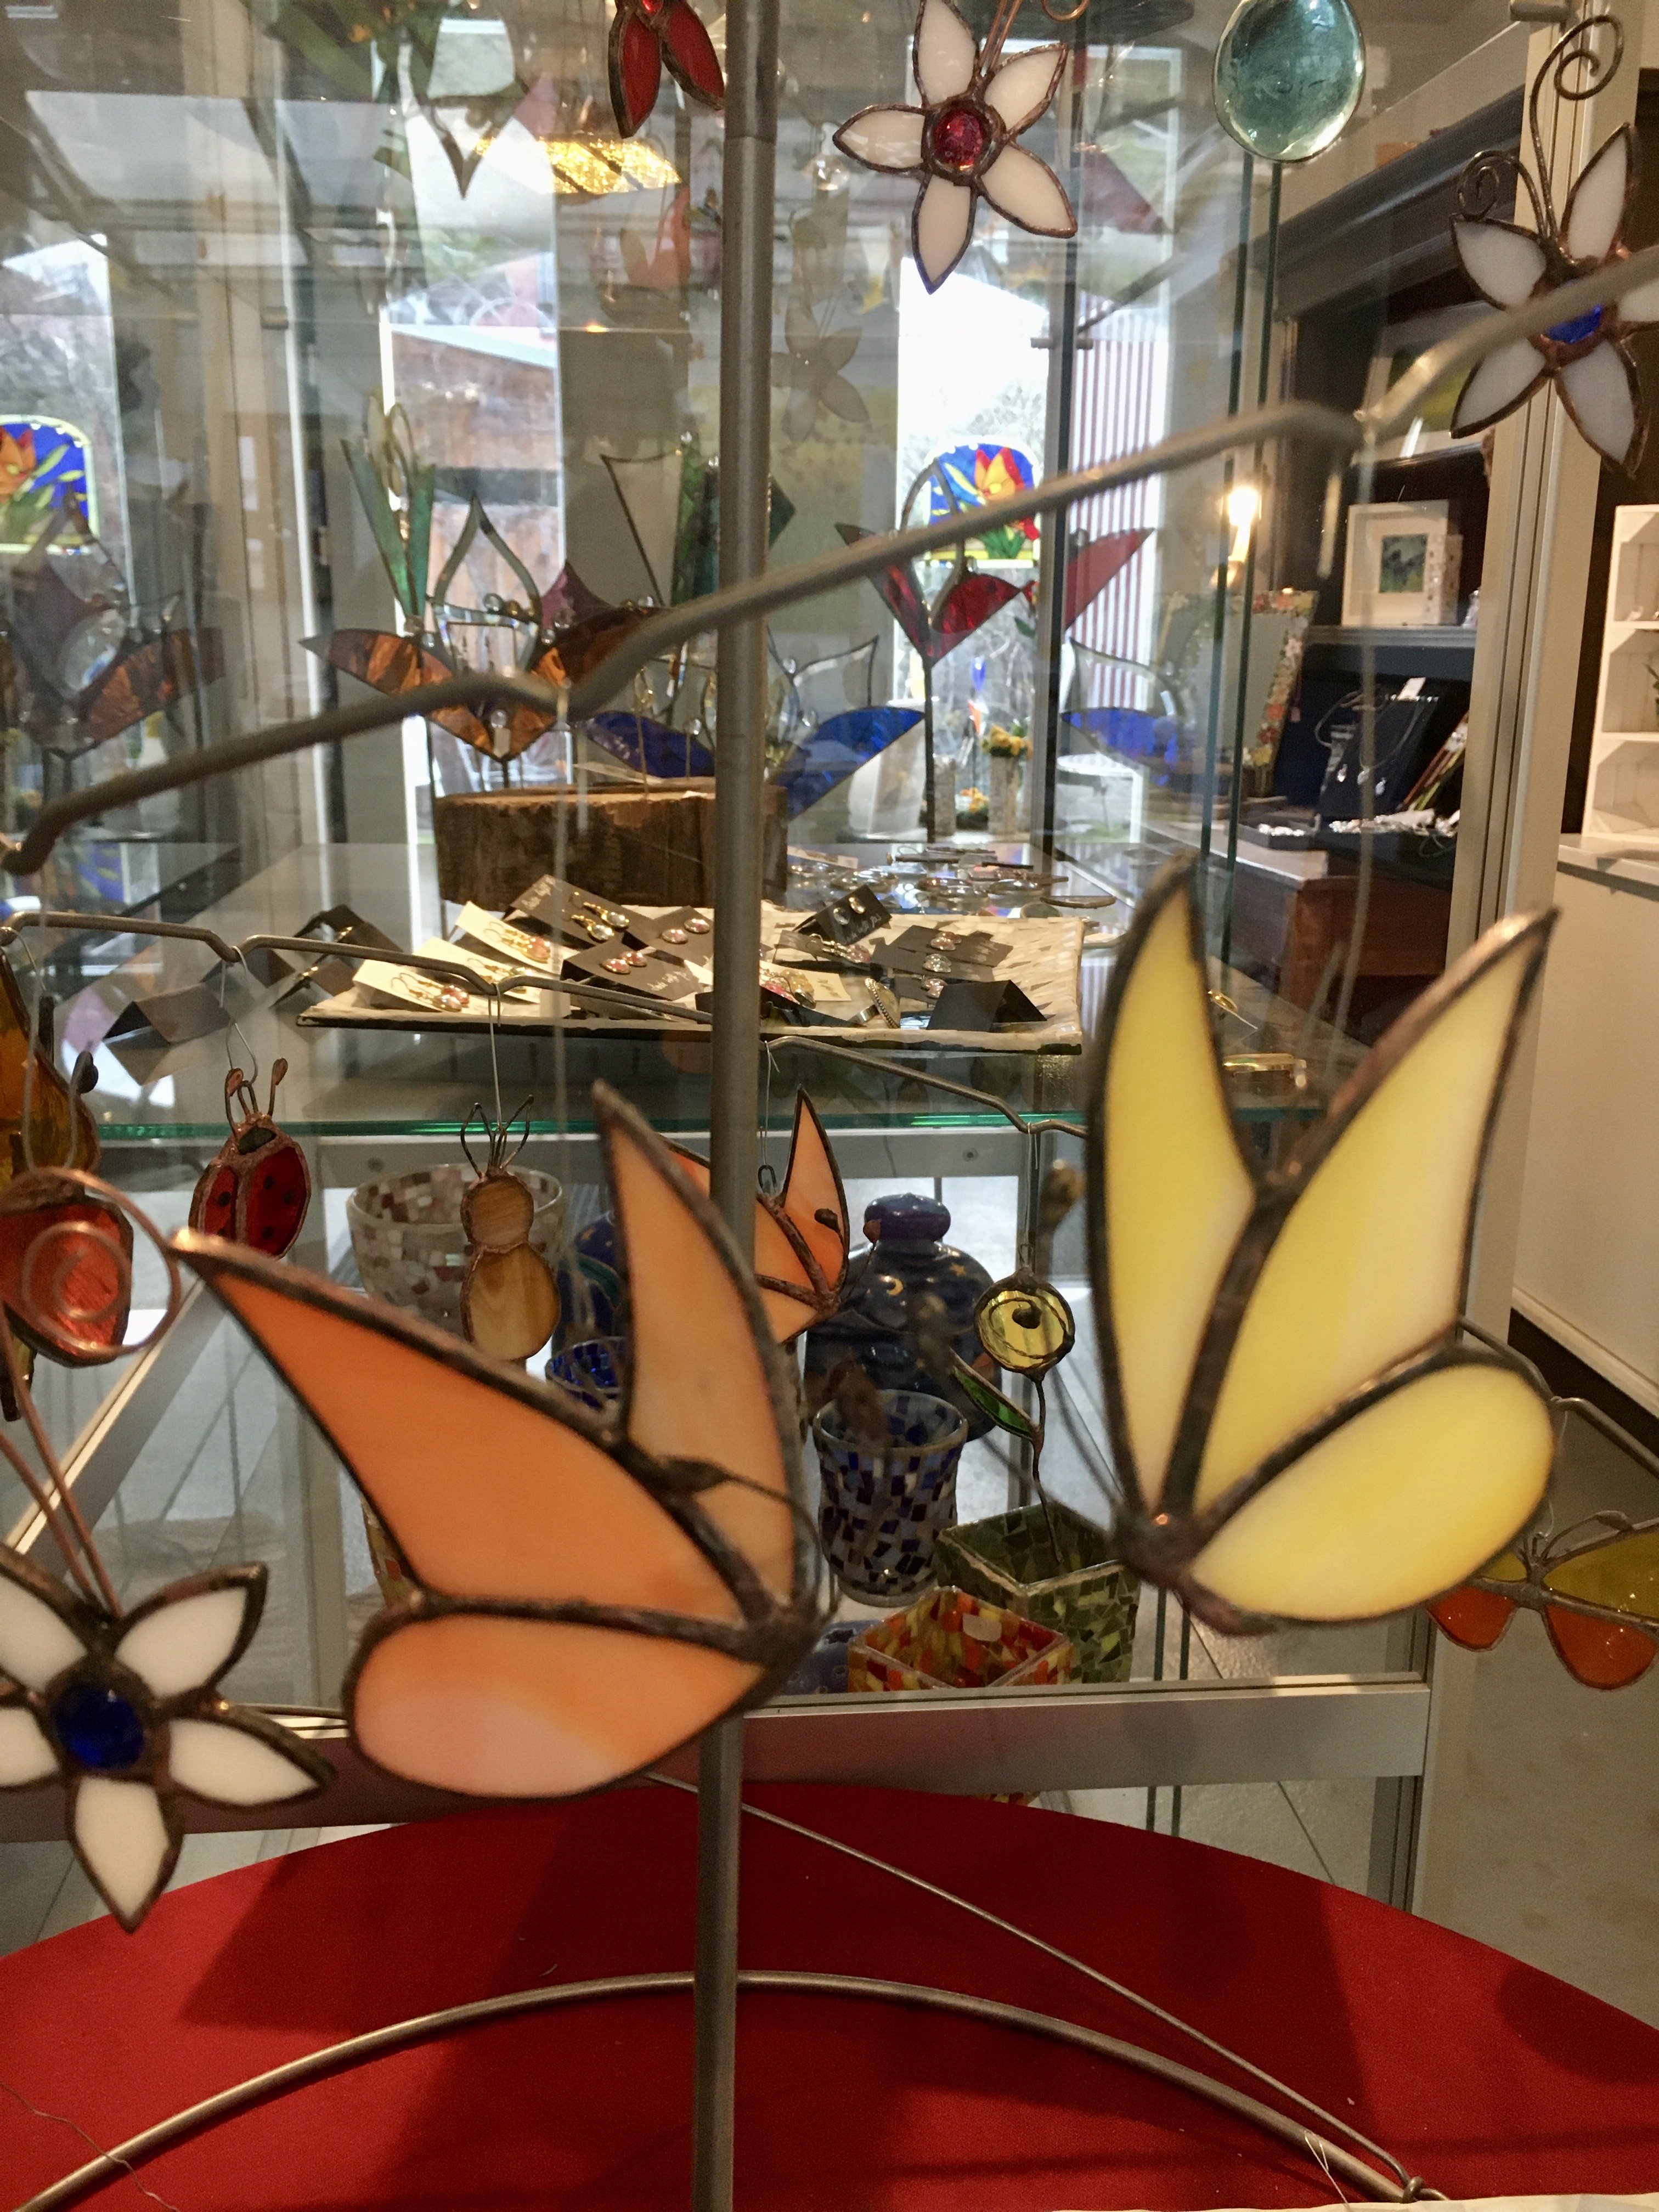 Schmetterlinge aus farbigem Glas
9,50€